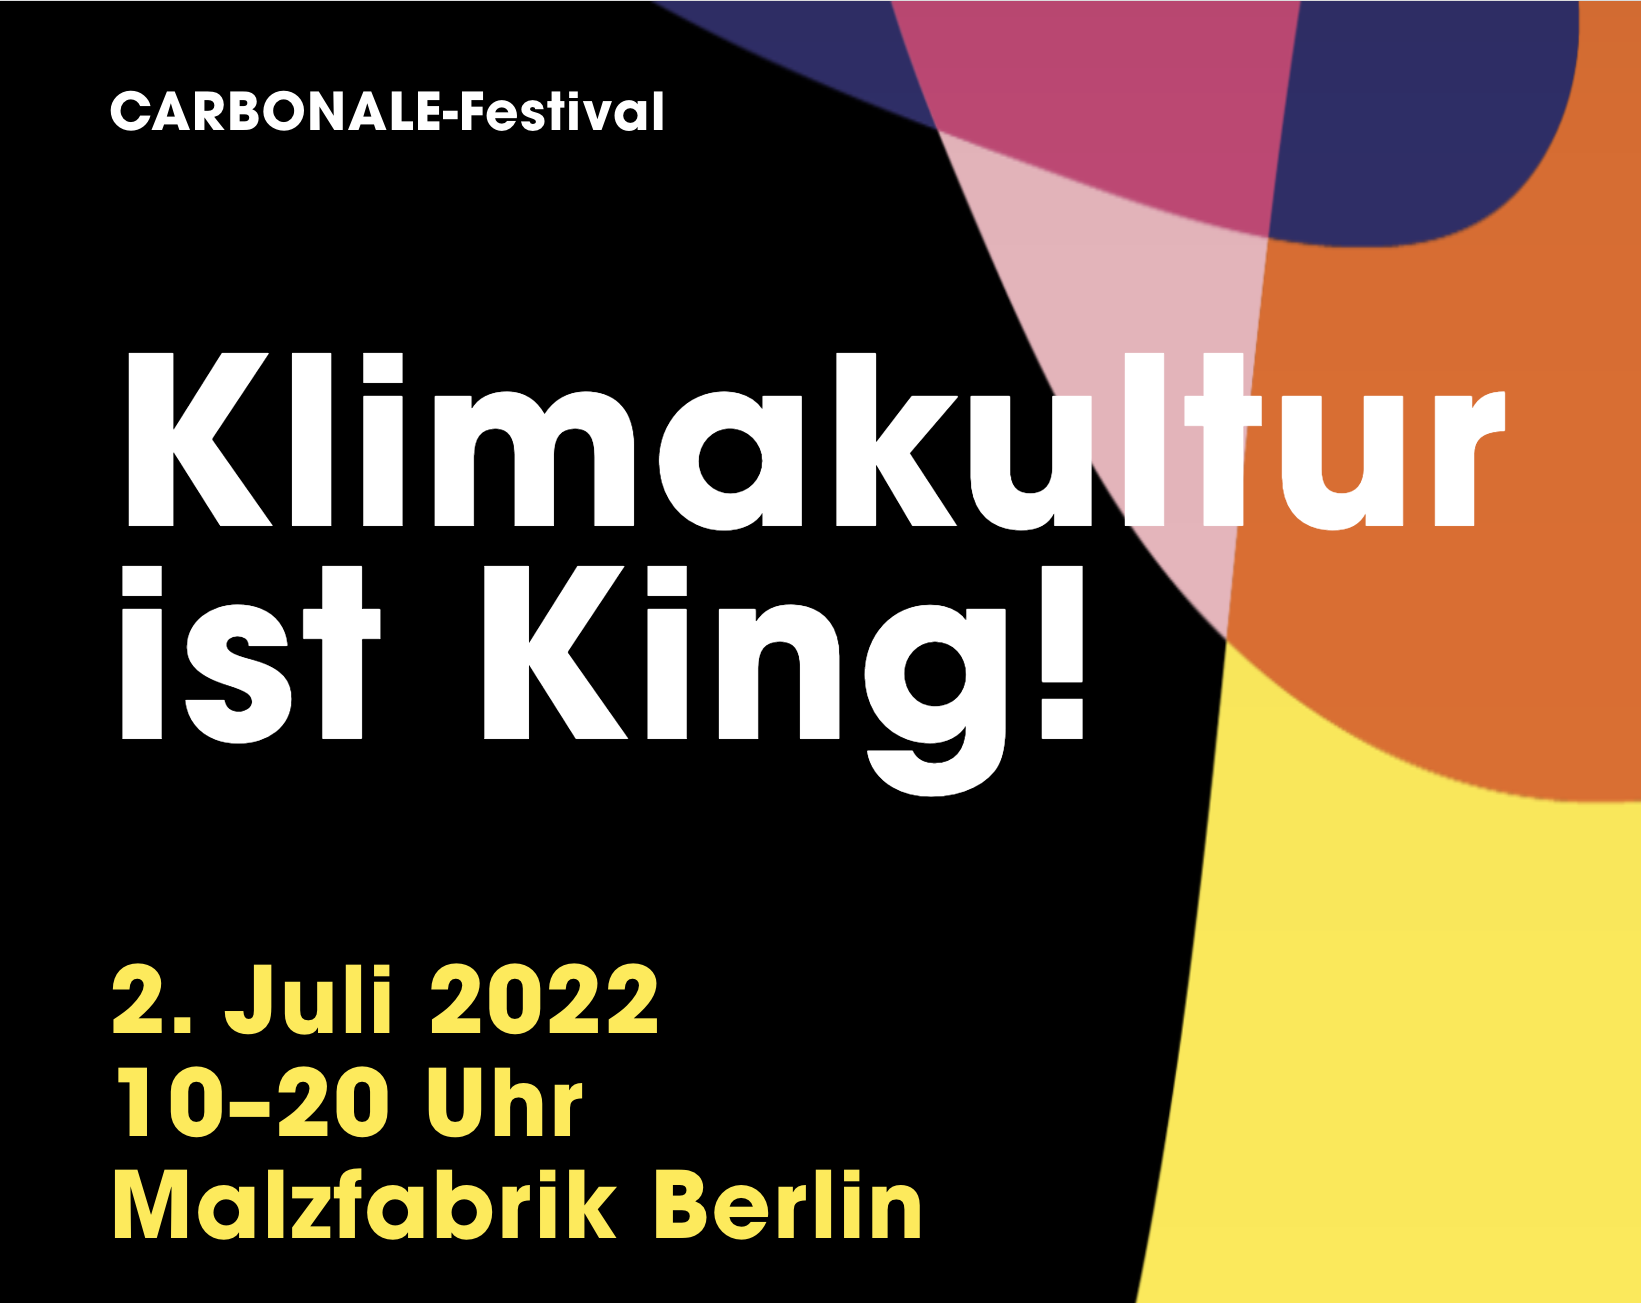 CARBONALE-Festival 2022